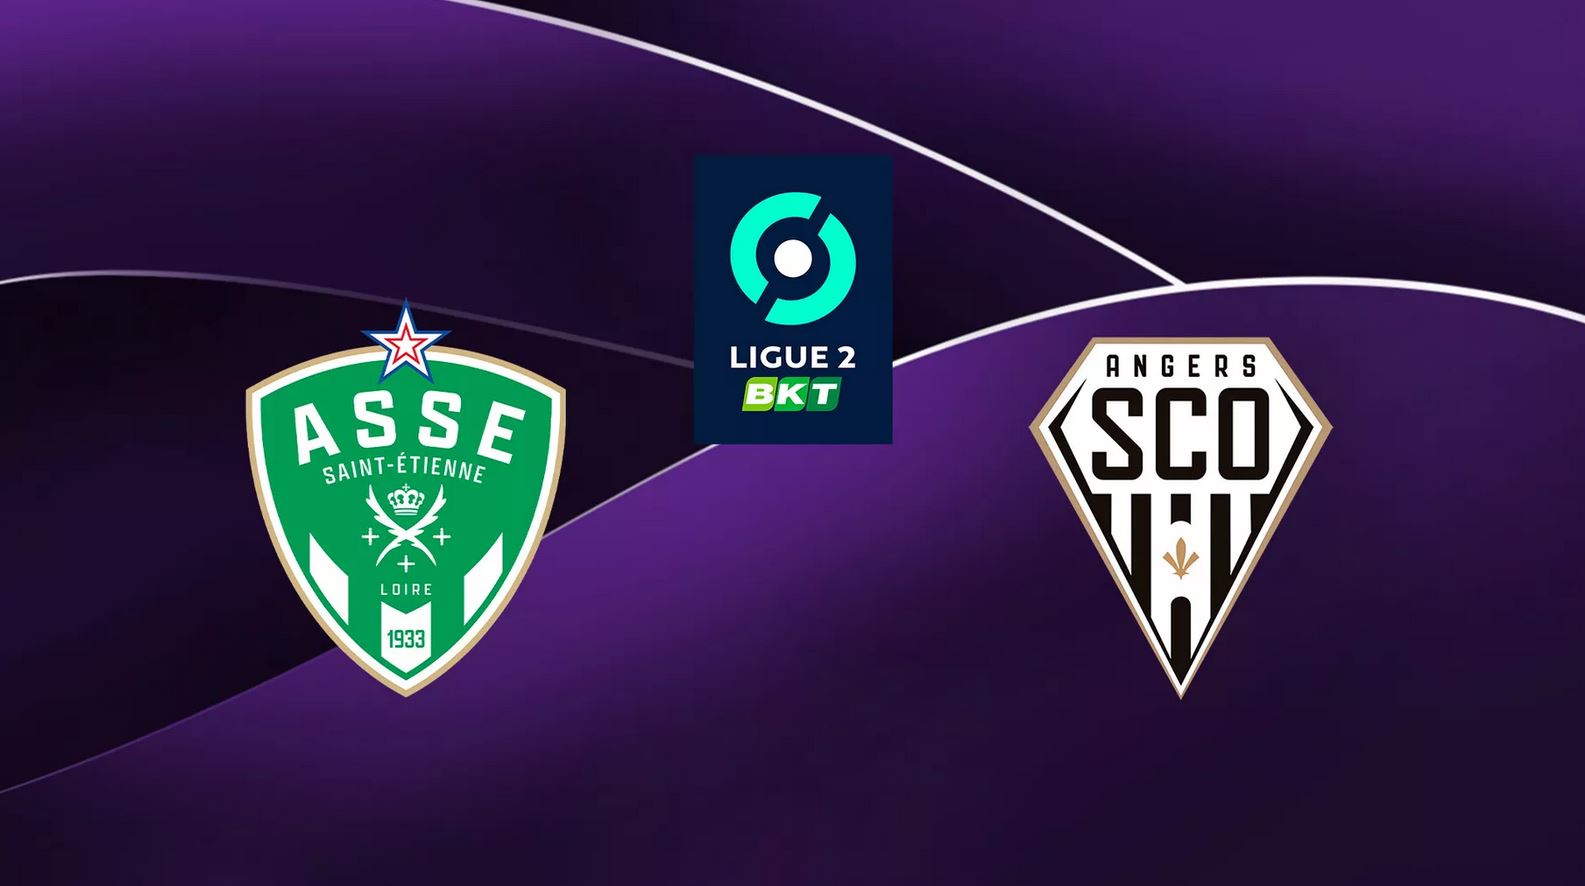 Saint-Etienne (ASSE) / Angers (SCO) (TV/Streaming) Sur quelle chaîne et à quelle heure regarder la rencontre de Ligue 2 ?